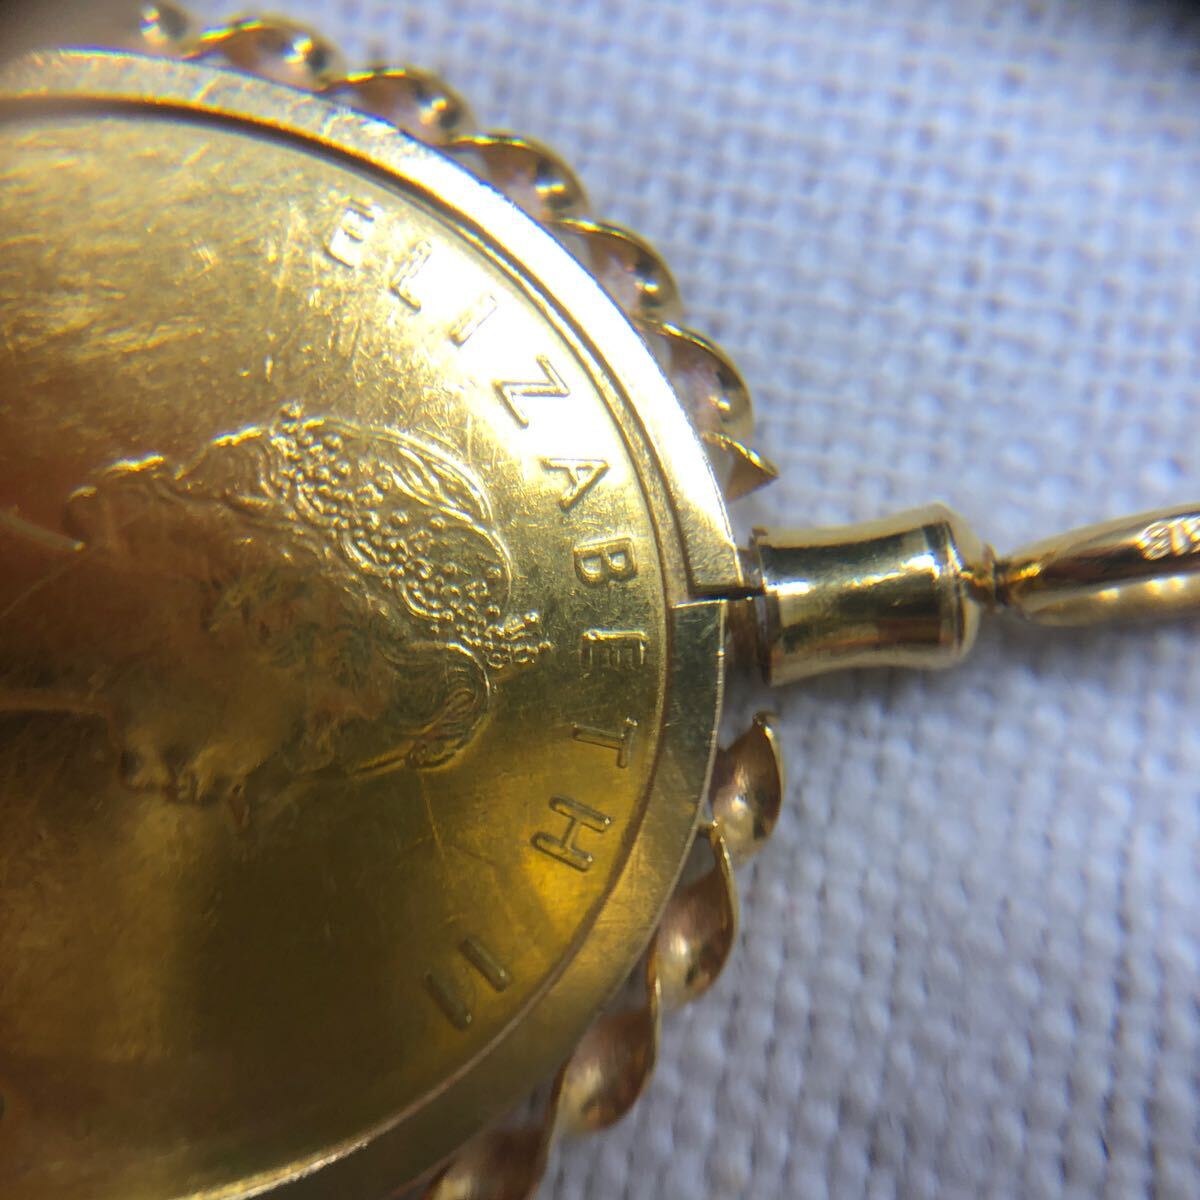  Maple leaf монета золотая монета 1/4 oz 24 золотой подвеска с цепью рамка-оправа K18 рамка-оправа 18 золотой желтое золото монета верх аксессуары драгоценный металл полная масса 9.3g